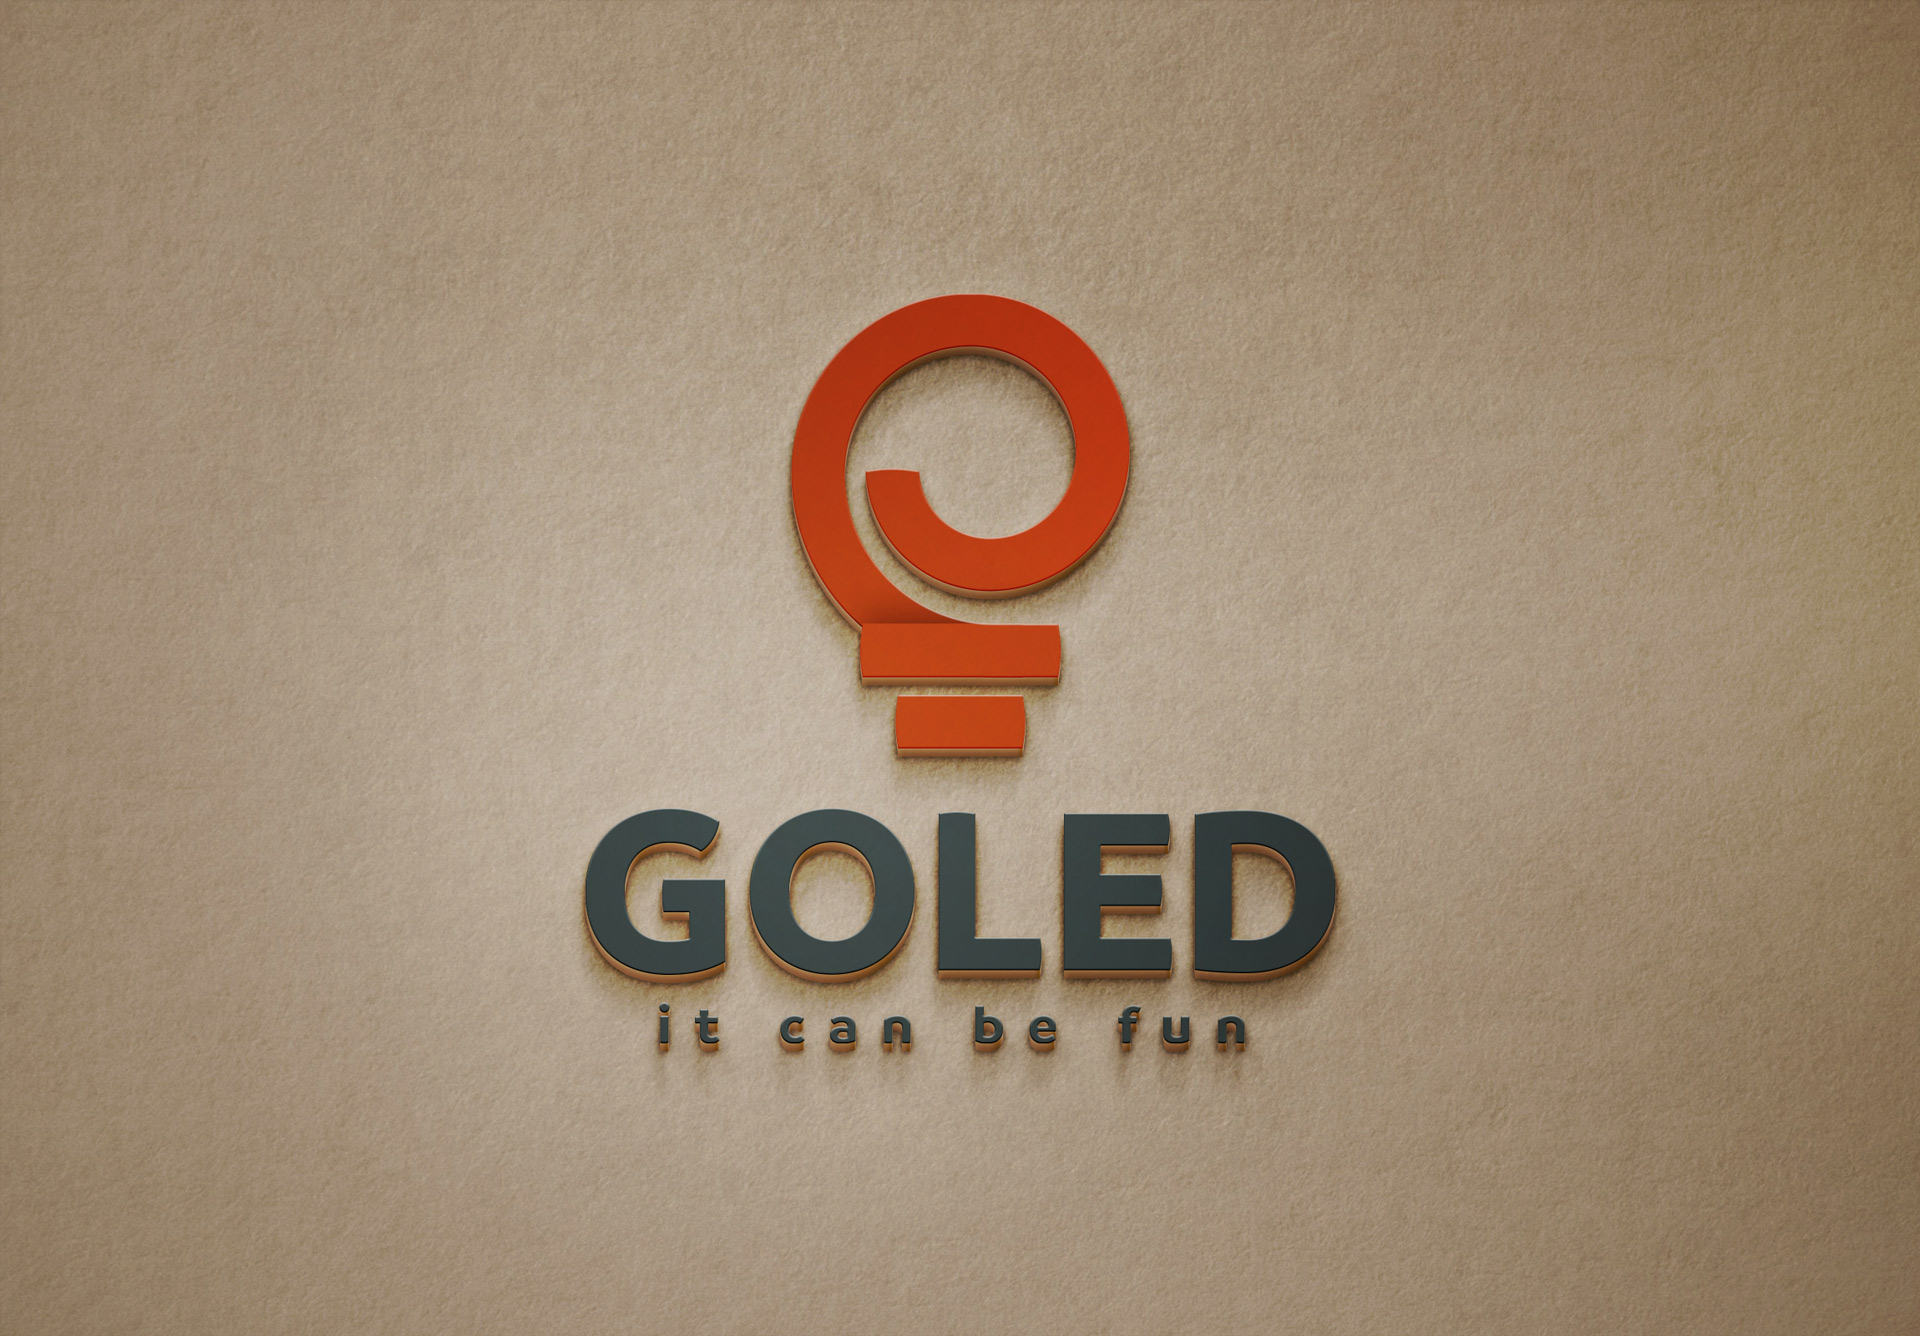 Goled logo